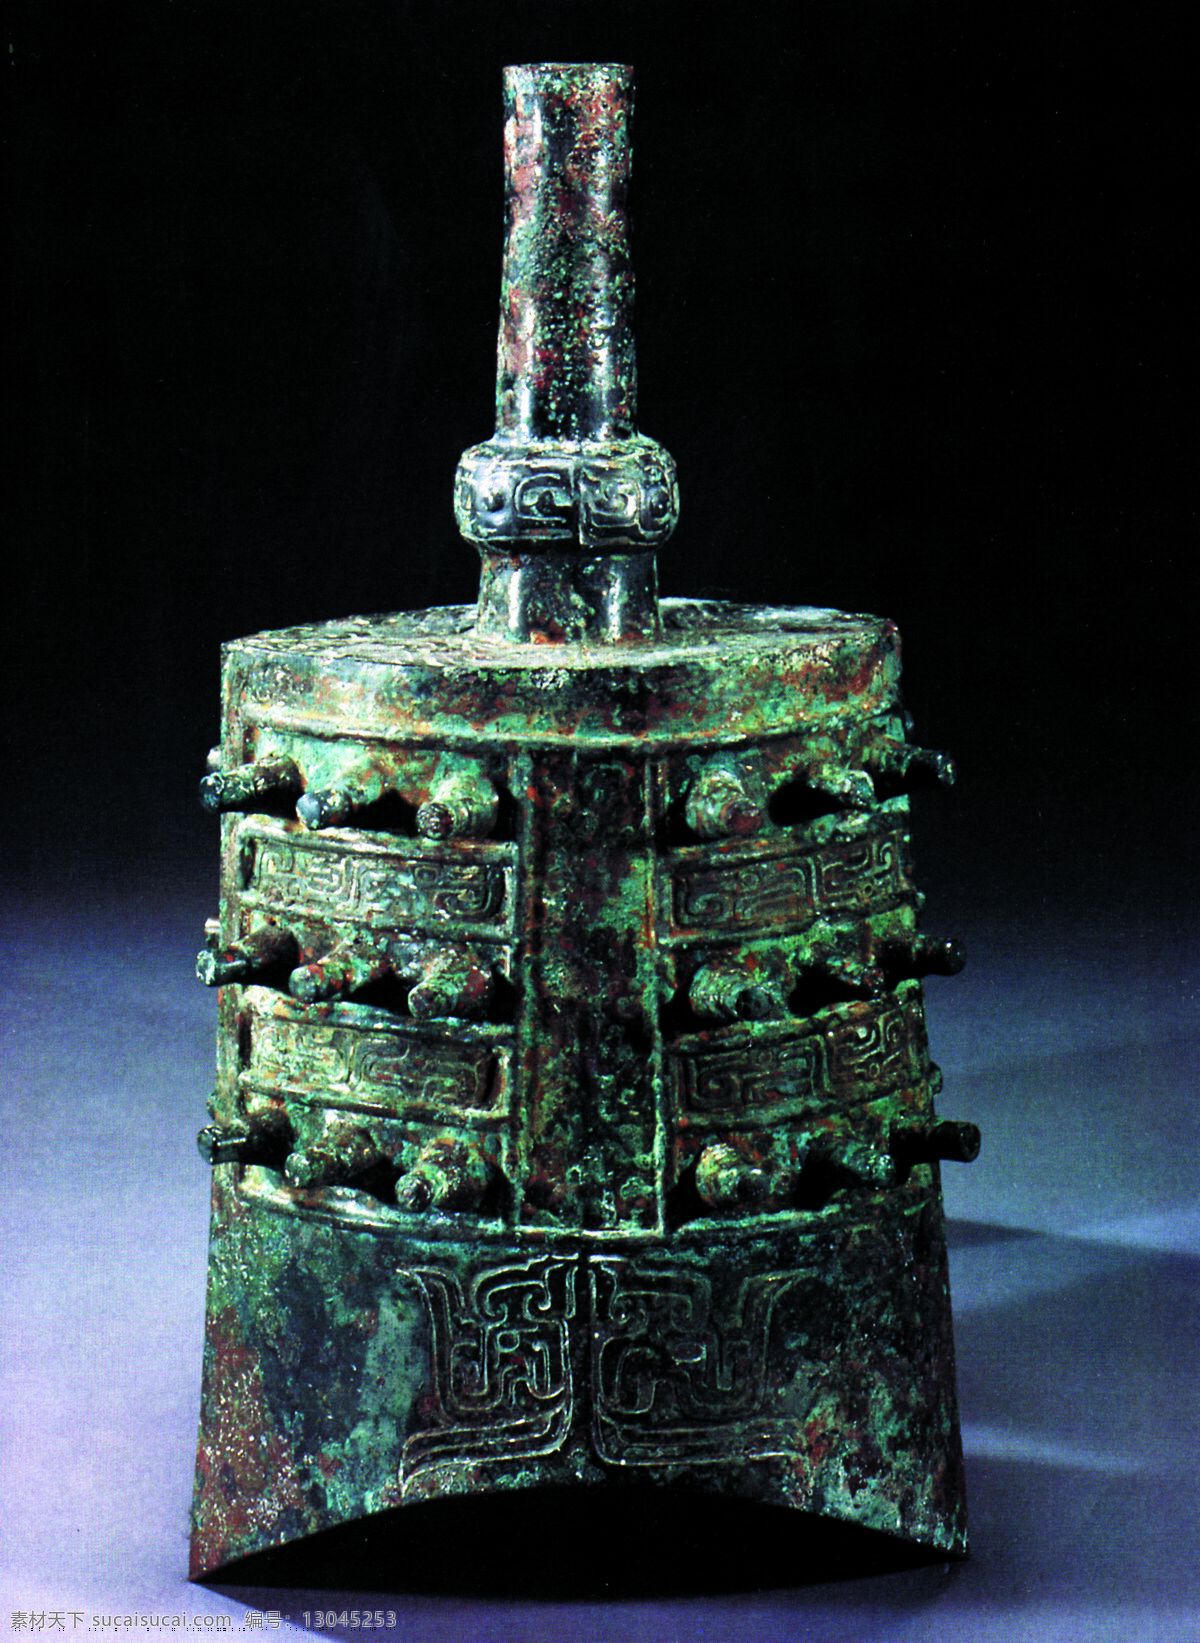 出土文物 瓷器 鼎 古董 陶瓷 艺术品 中华艺术绘画 壶 盖 文化艺术